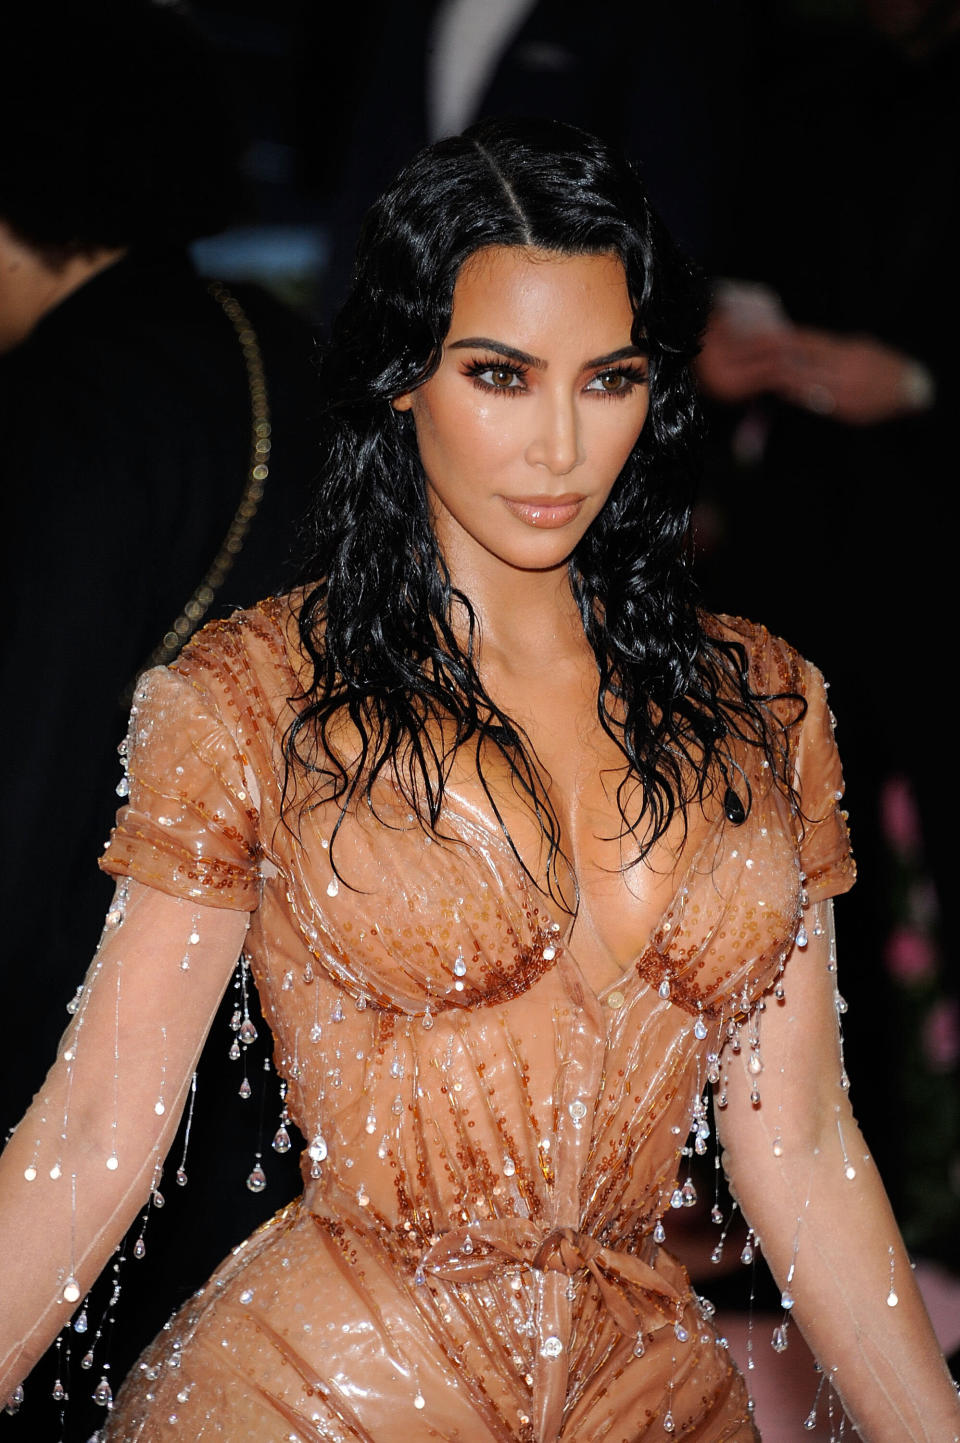 Kim Kardashian auf der Met Gala 2019 in einem Latex-Kleid von Thierry Mugler. (Bild: Getty Images)